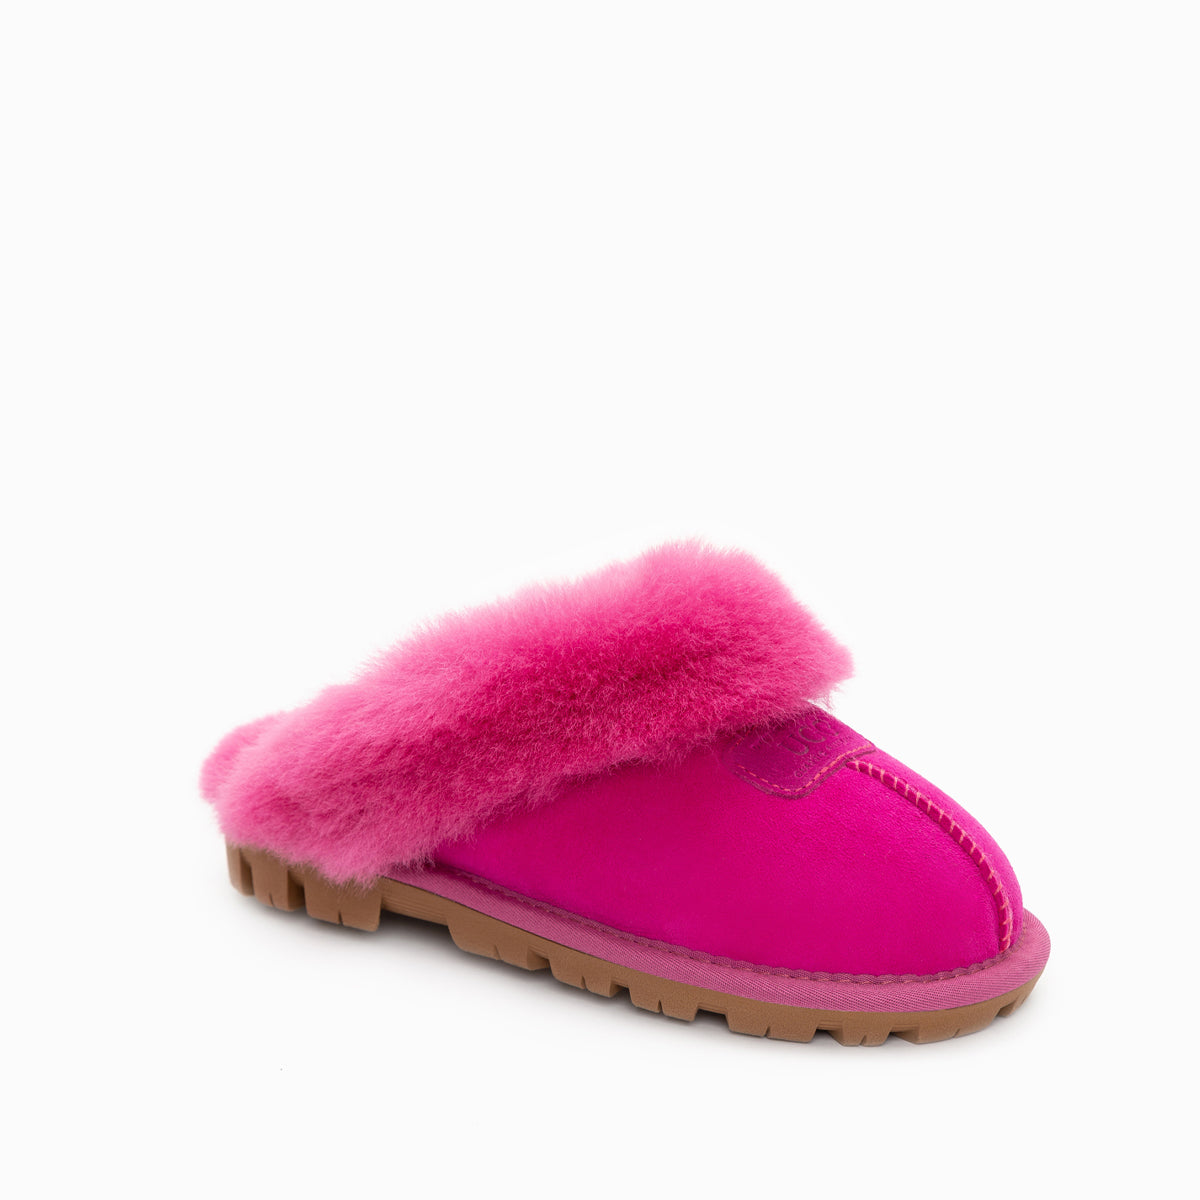 ladies ugg slippers